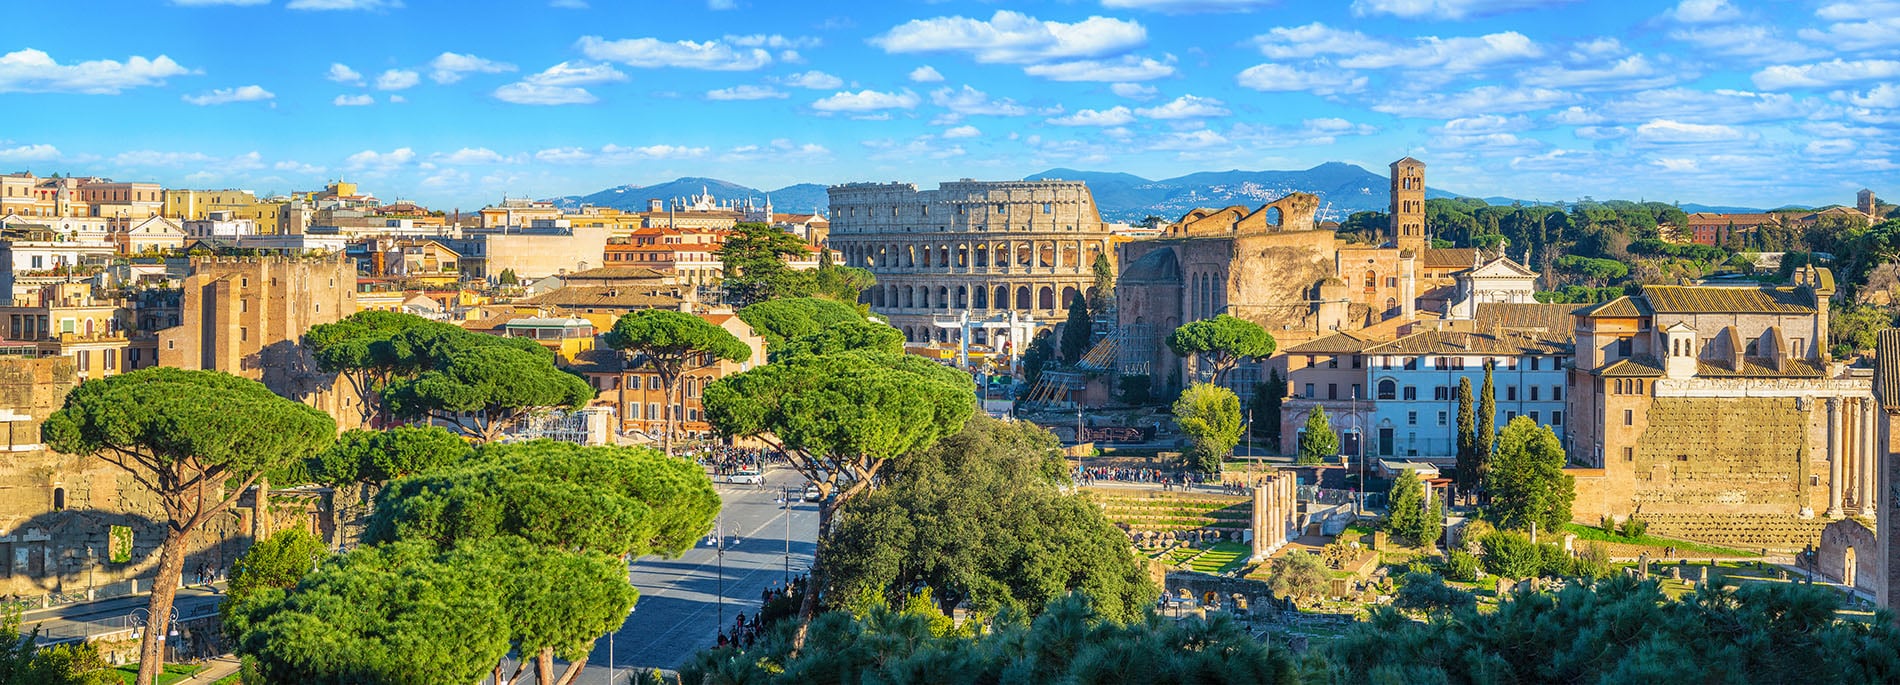 Monumentos de Roma - Arte y lugares de interés de la Ciudad Eterna